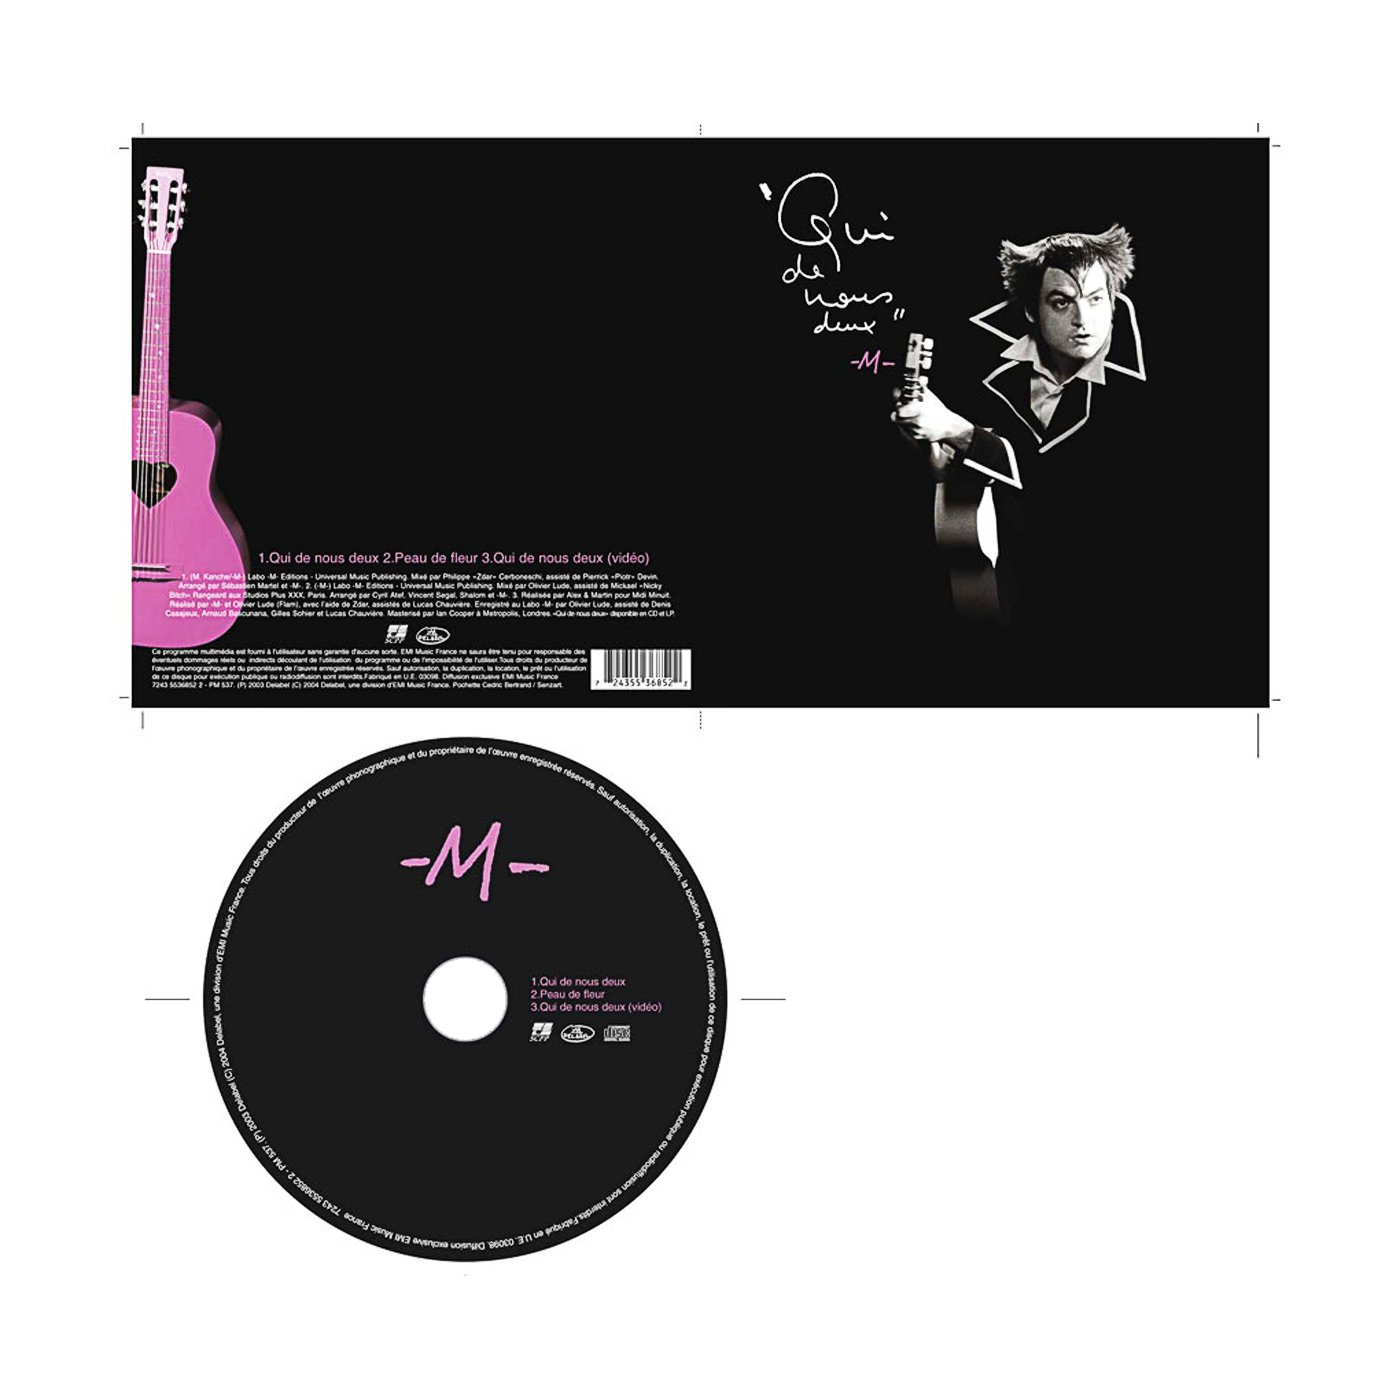 -M- Qui de nous deux. CD single 2003.